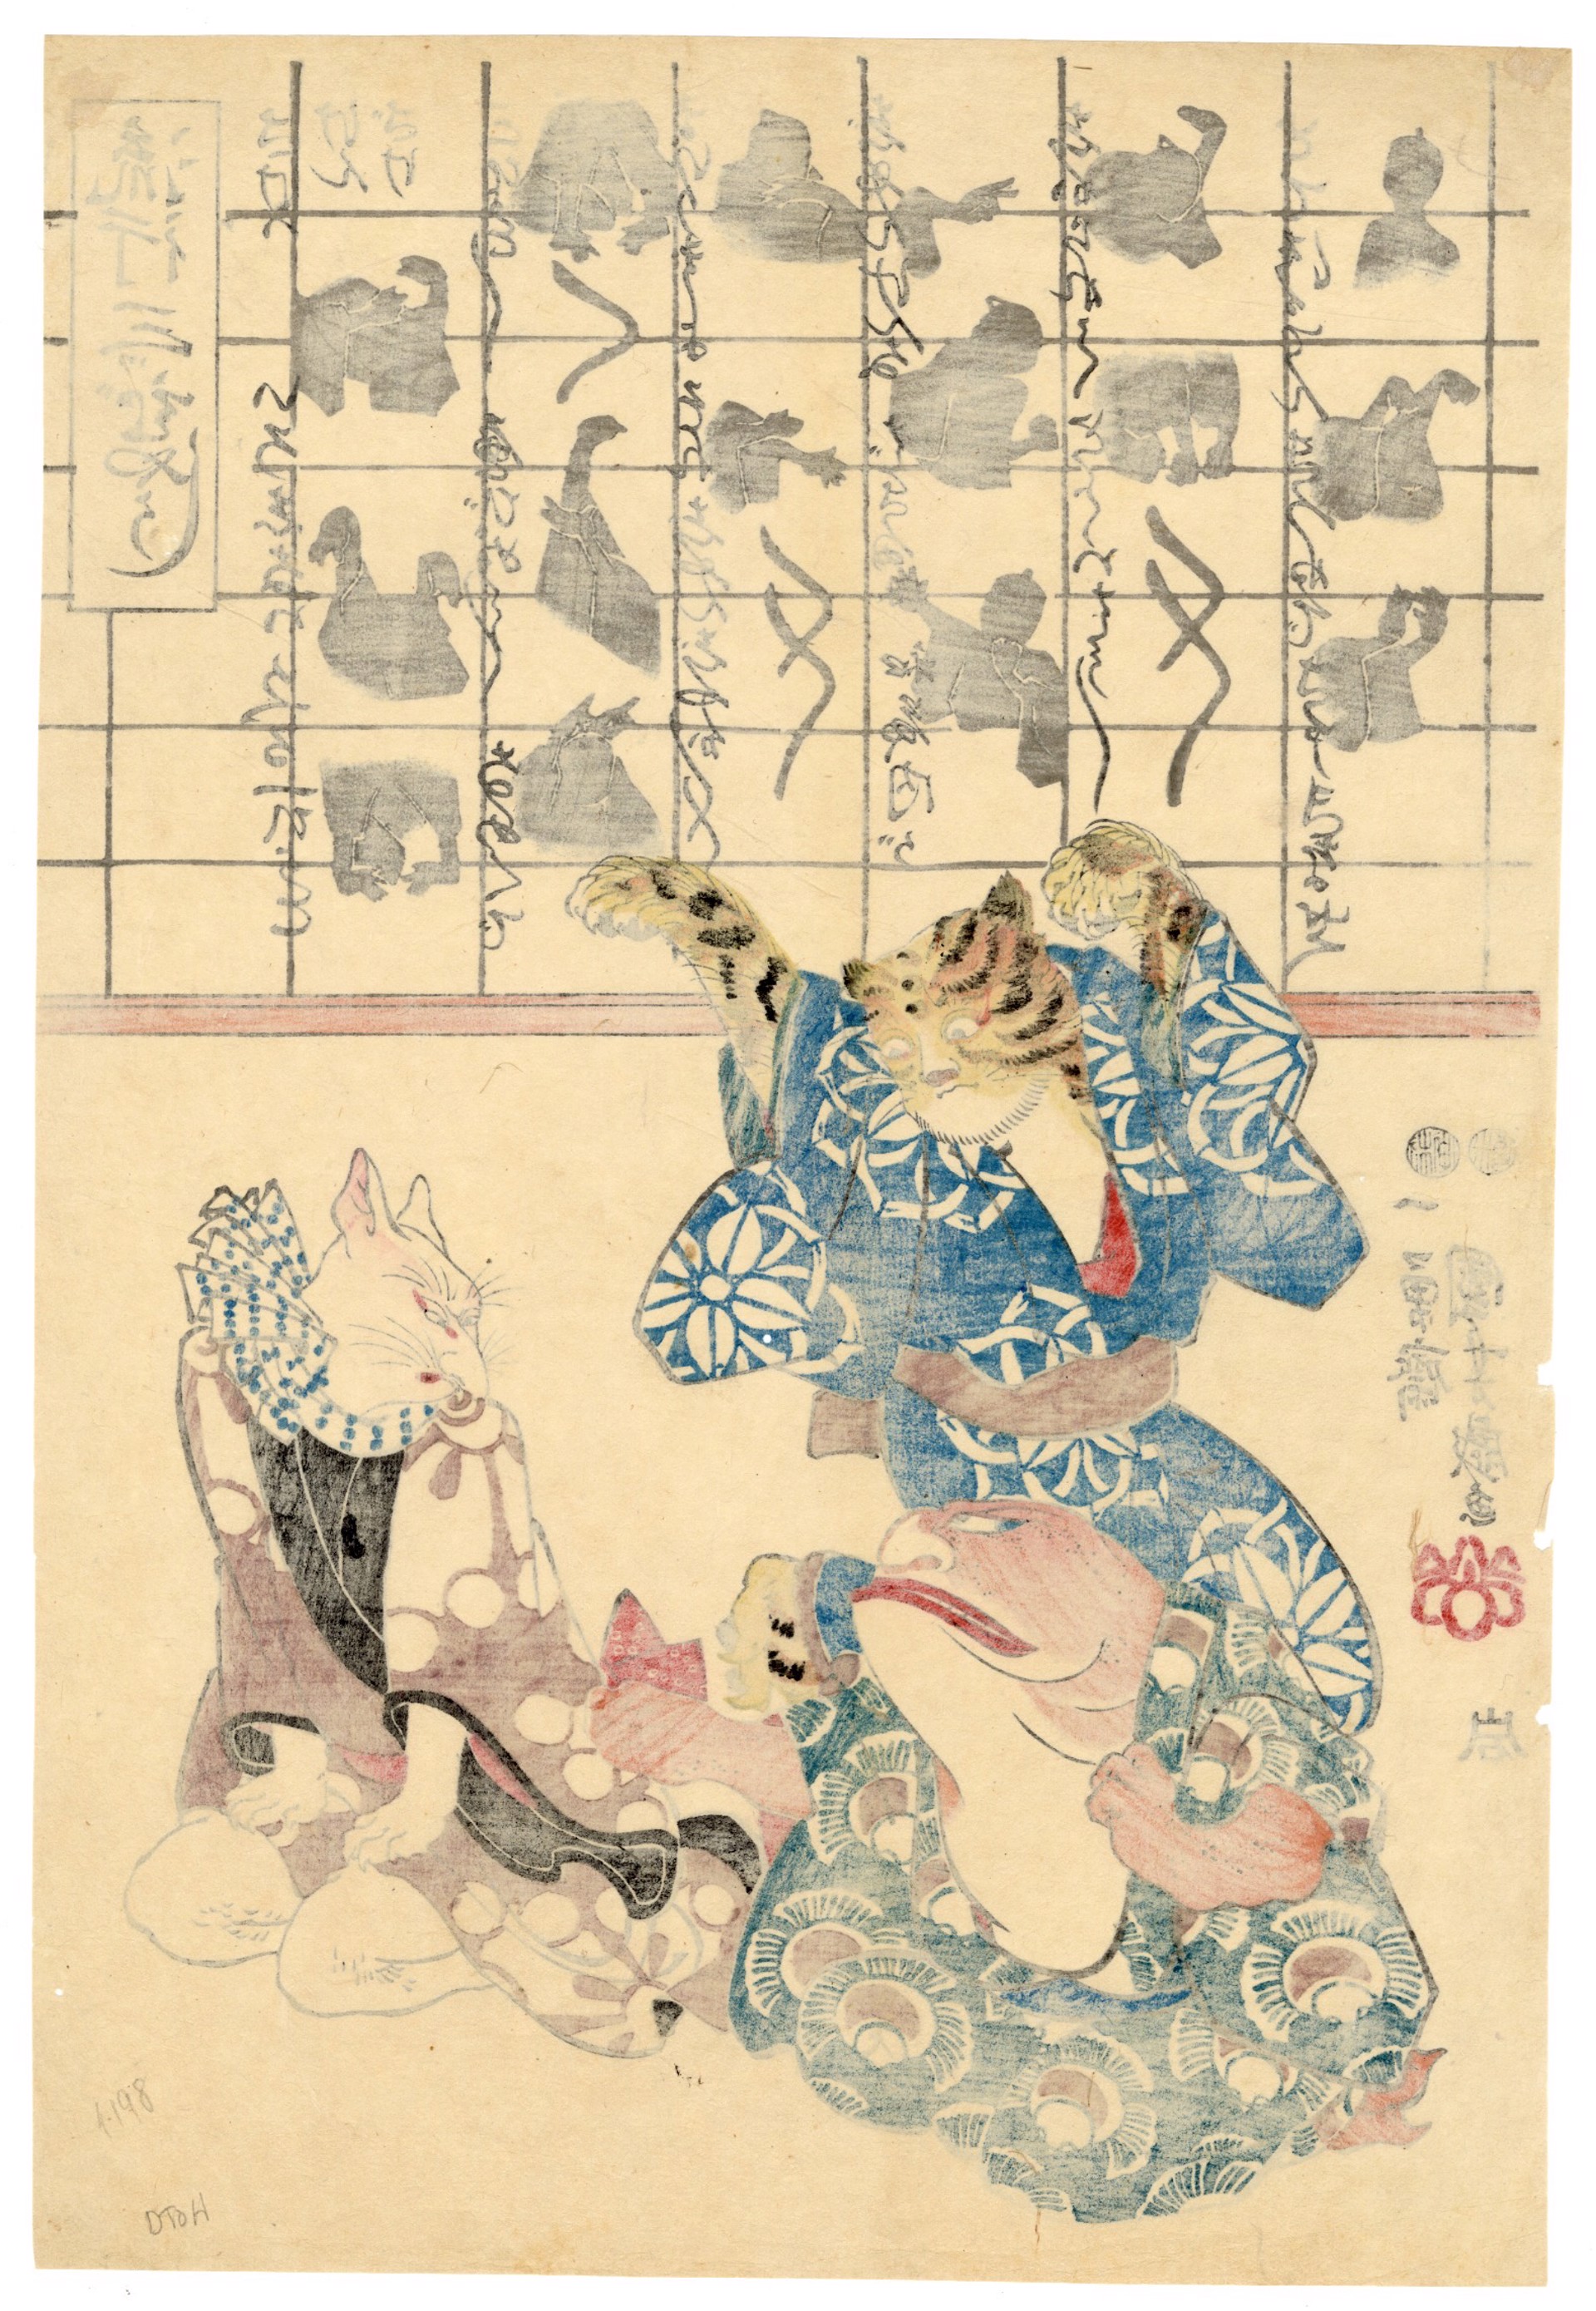 A Popular Three Man Play (Ken Game) by Kuniyoshi